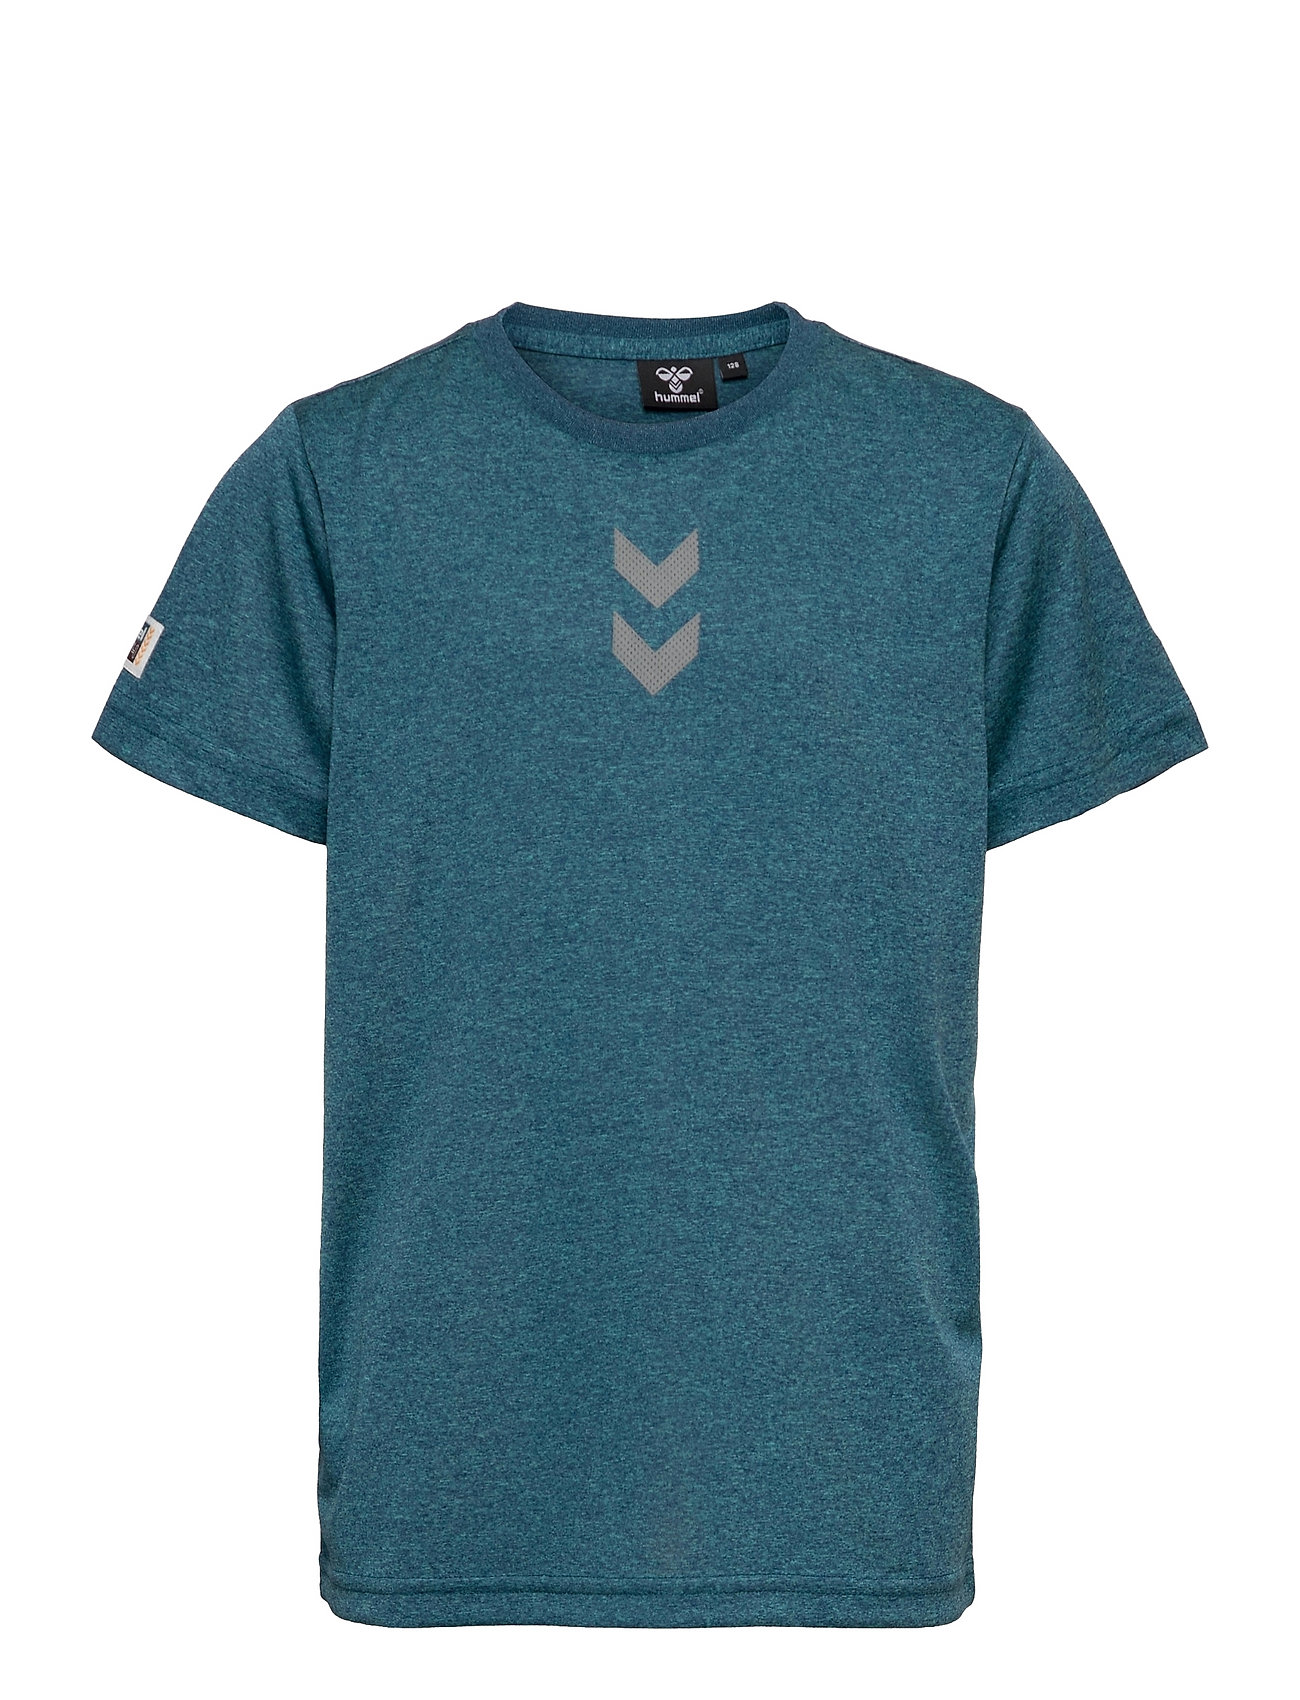 Hmltang T-Shirt S/S T-shirts Short-sleeved Sininen Hummel